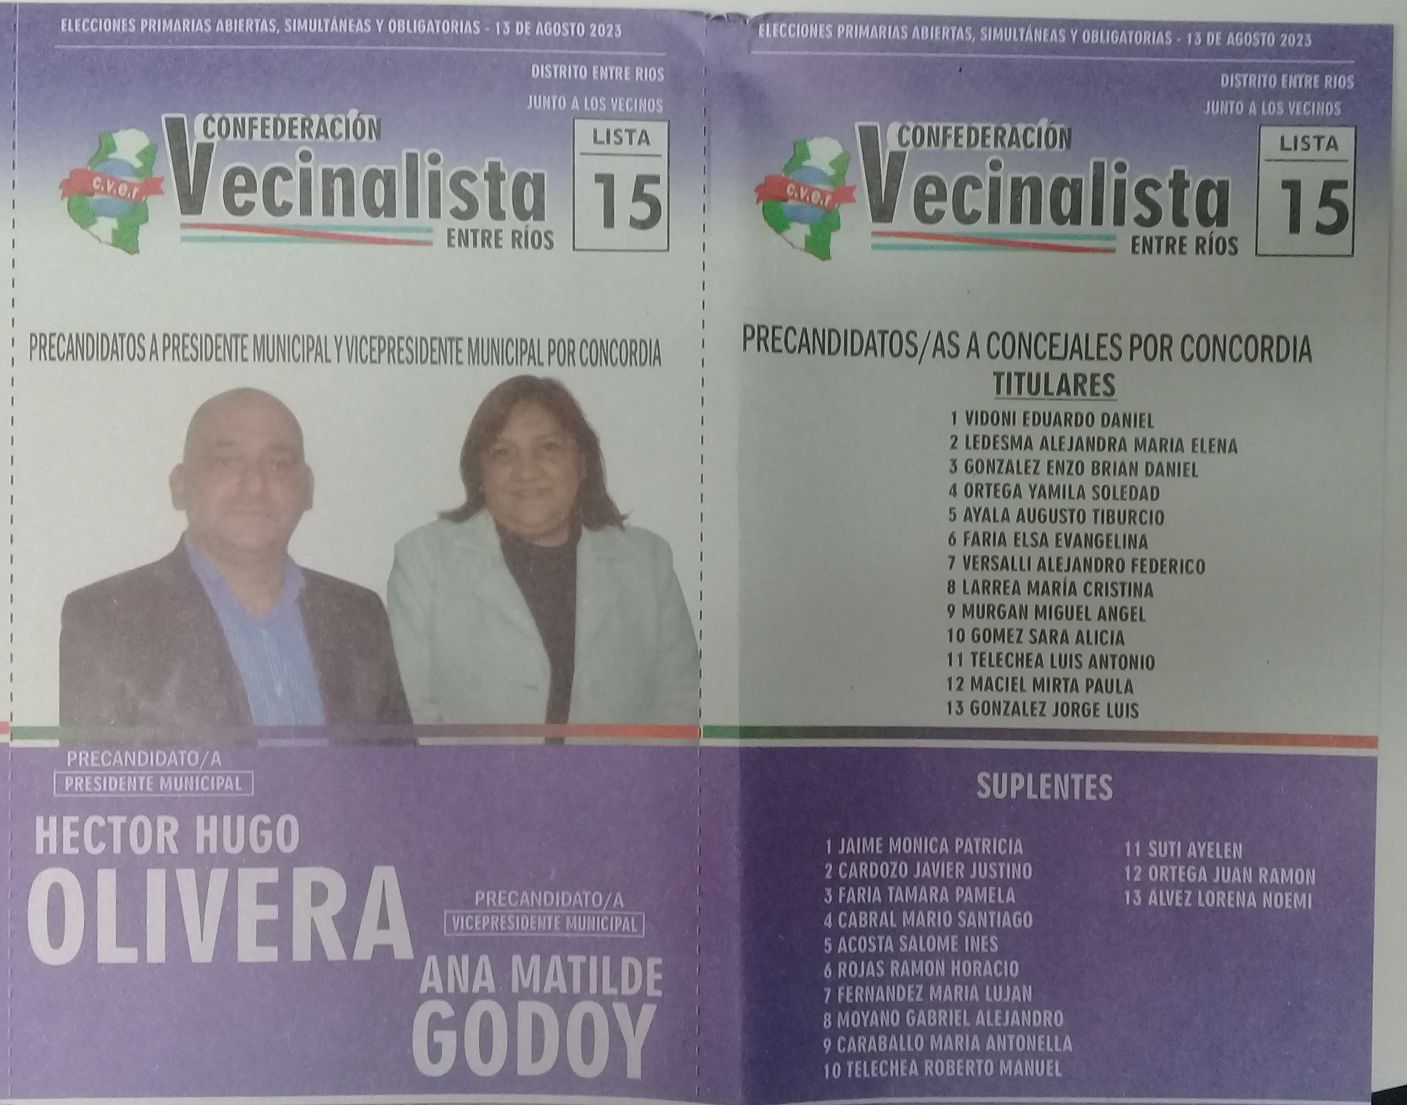 Lista 15: Confederación Vecinalista Entre Ríos - Hector Hugo Olivera.